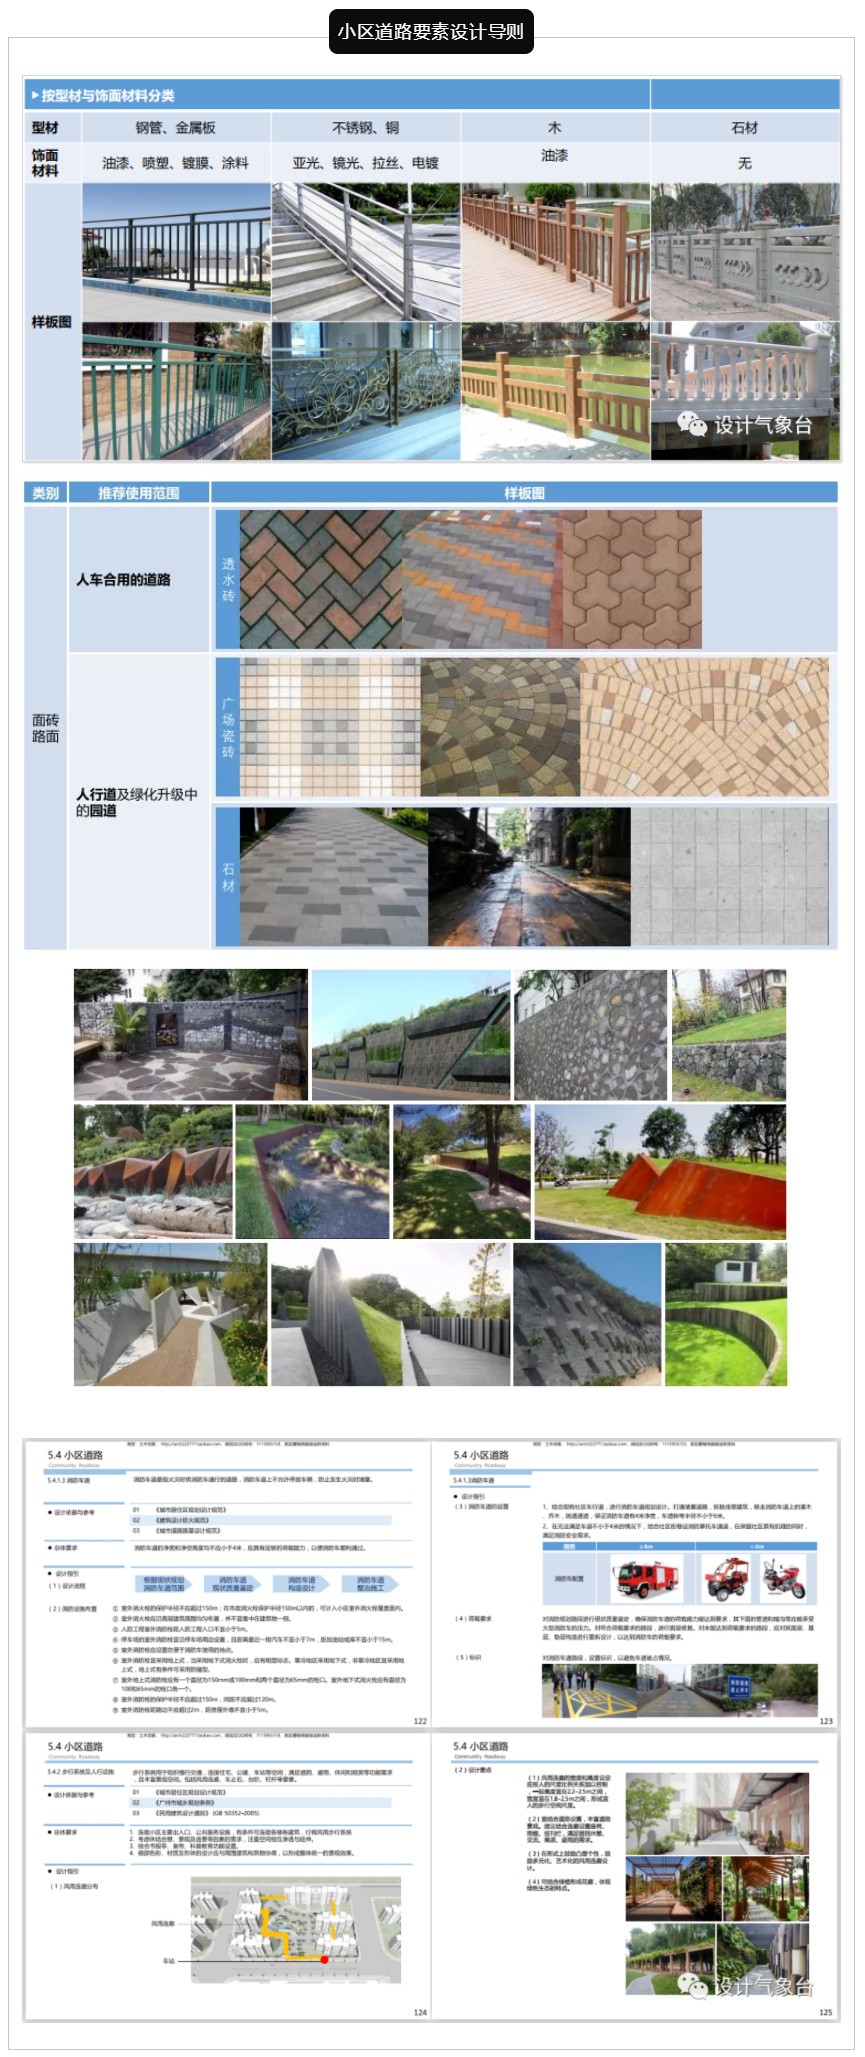 《广州老旧小区微改造设计导则》PDF_1586827562924836.jpg